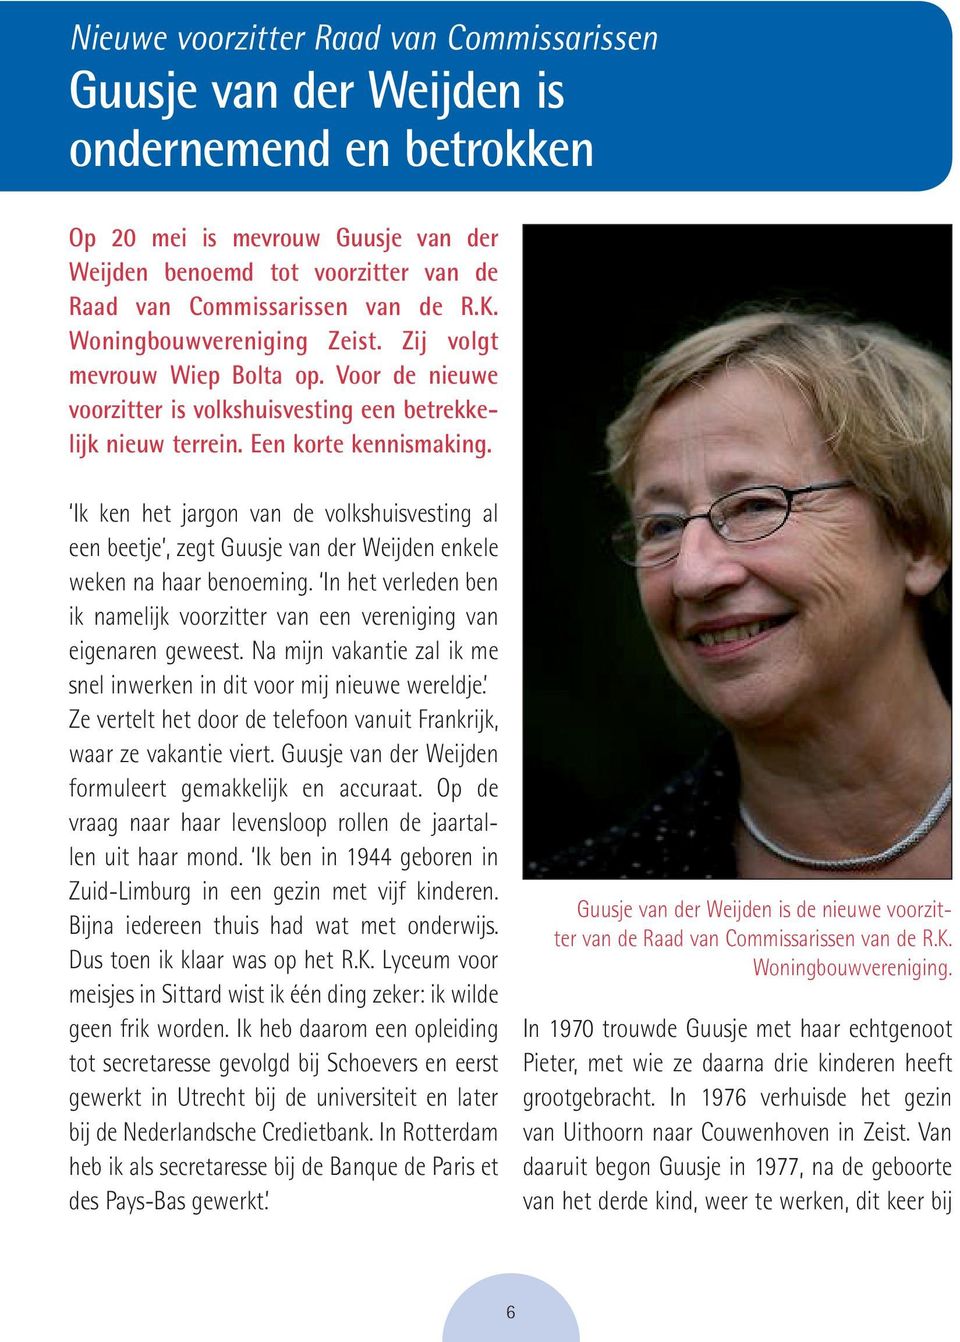 Ik ken het jargon van de volkshuisvesting al een beetje, zegt Guusje van der Weijden enkele weken na haar benoeming.